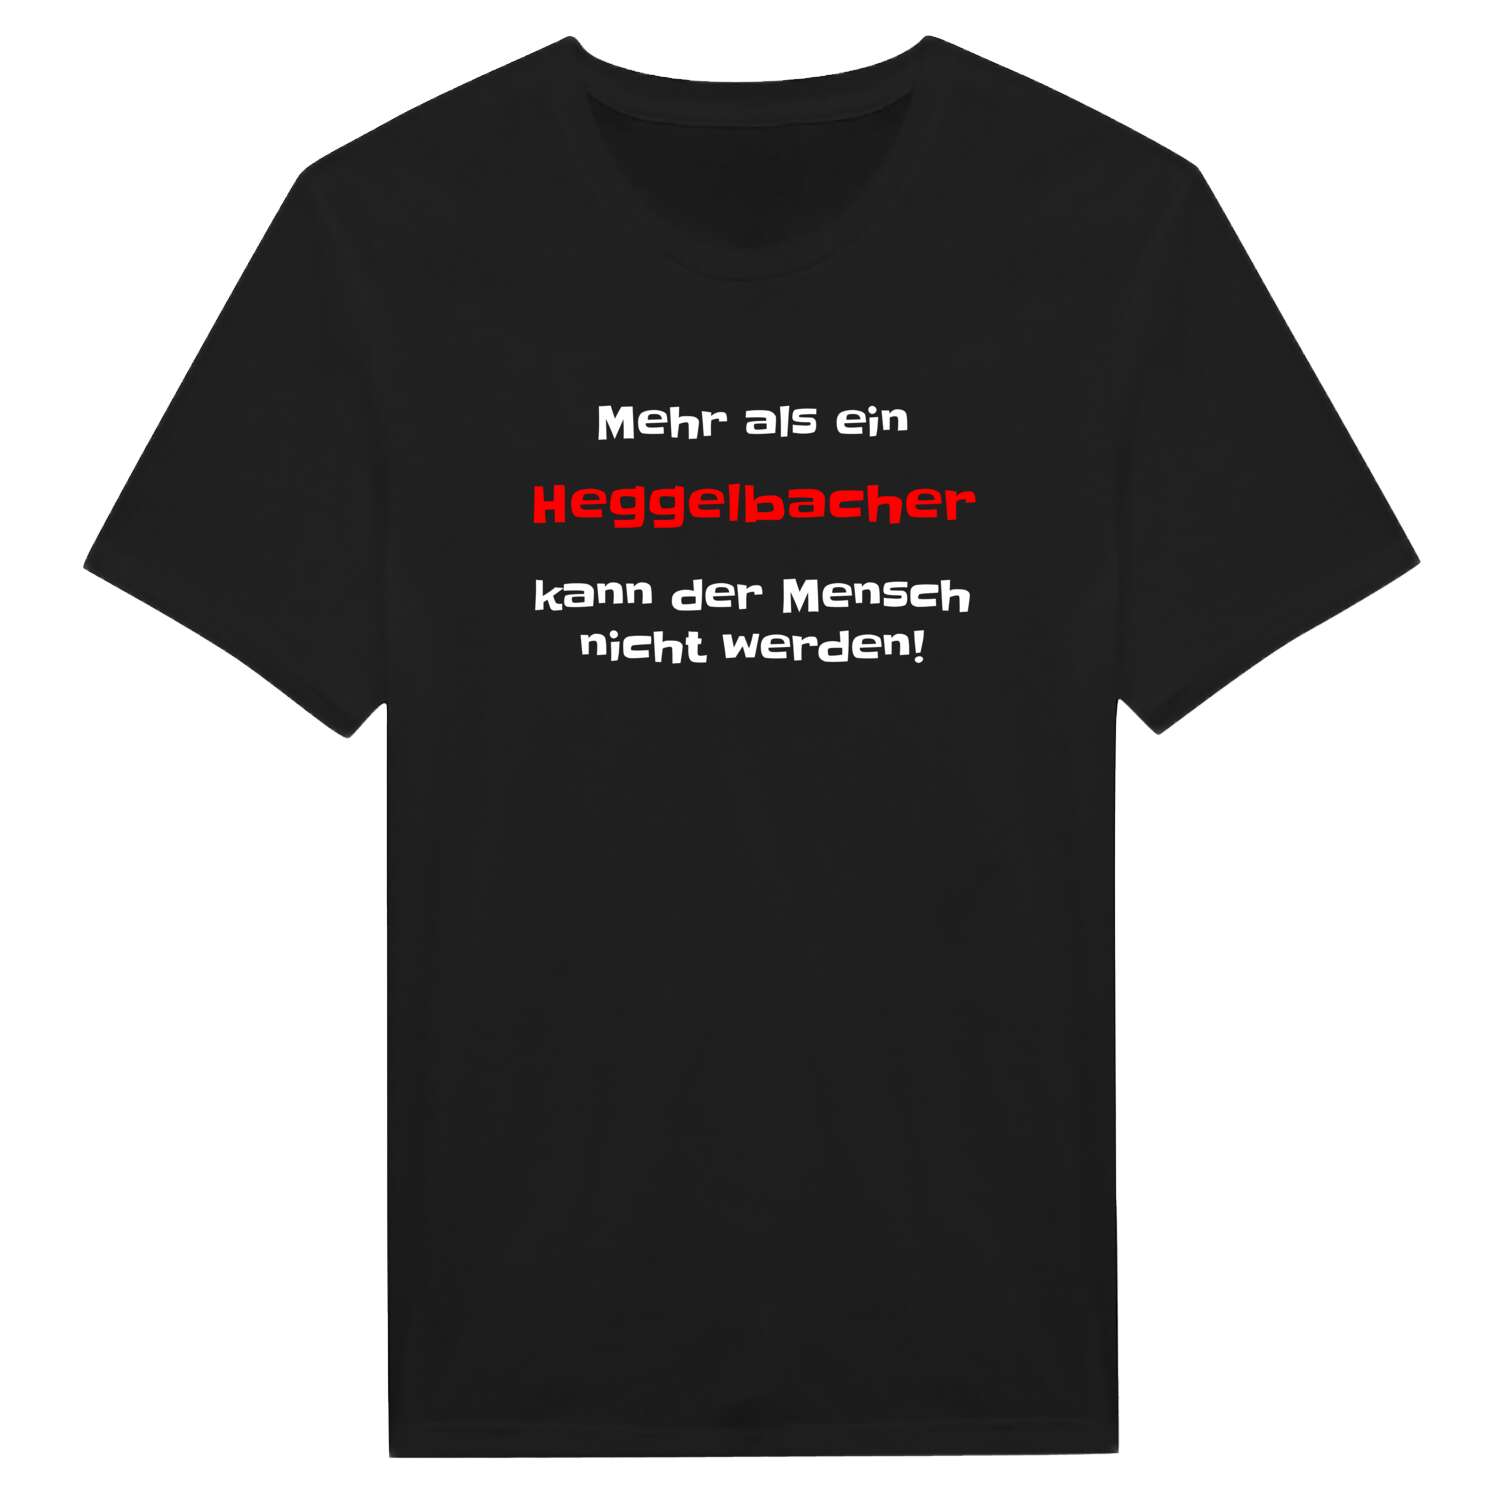 Heggelbach T-Shirt »Mehr als ein«